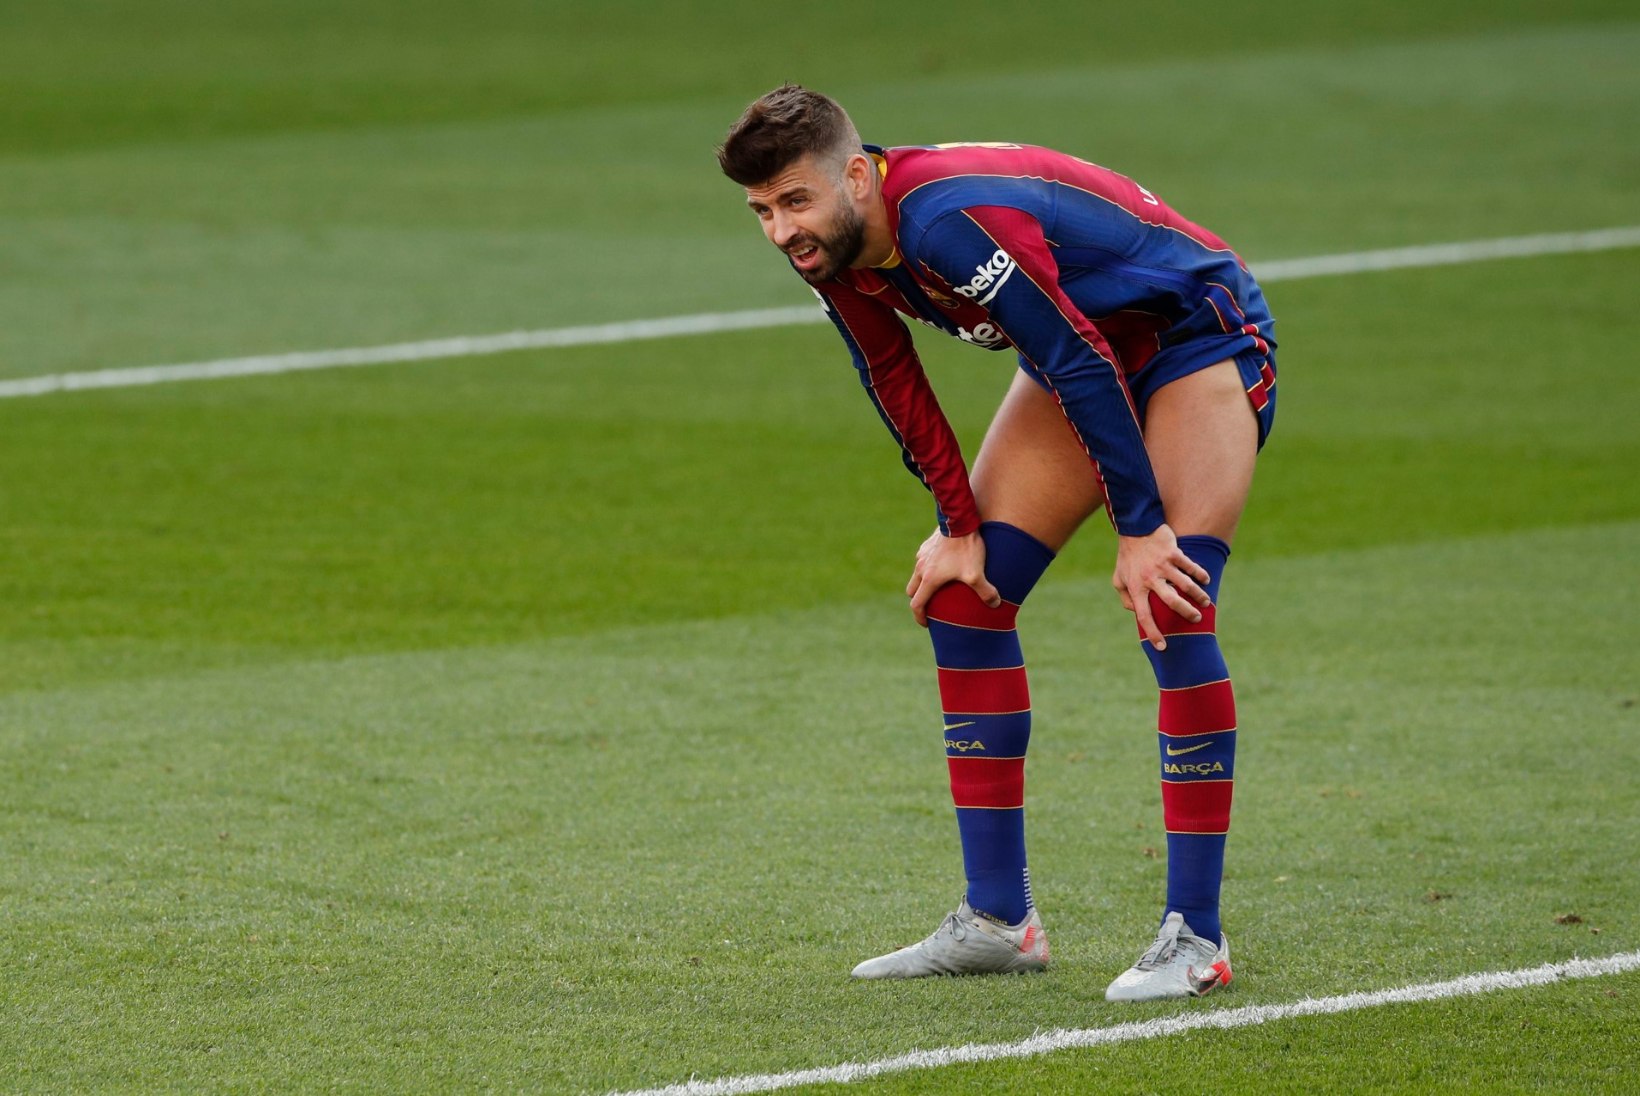 Barcelona staari võib oodata ligi poole aasta pikkune vigastuspaus